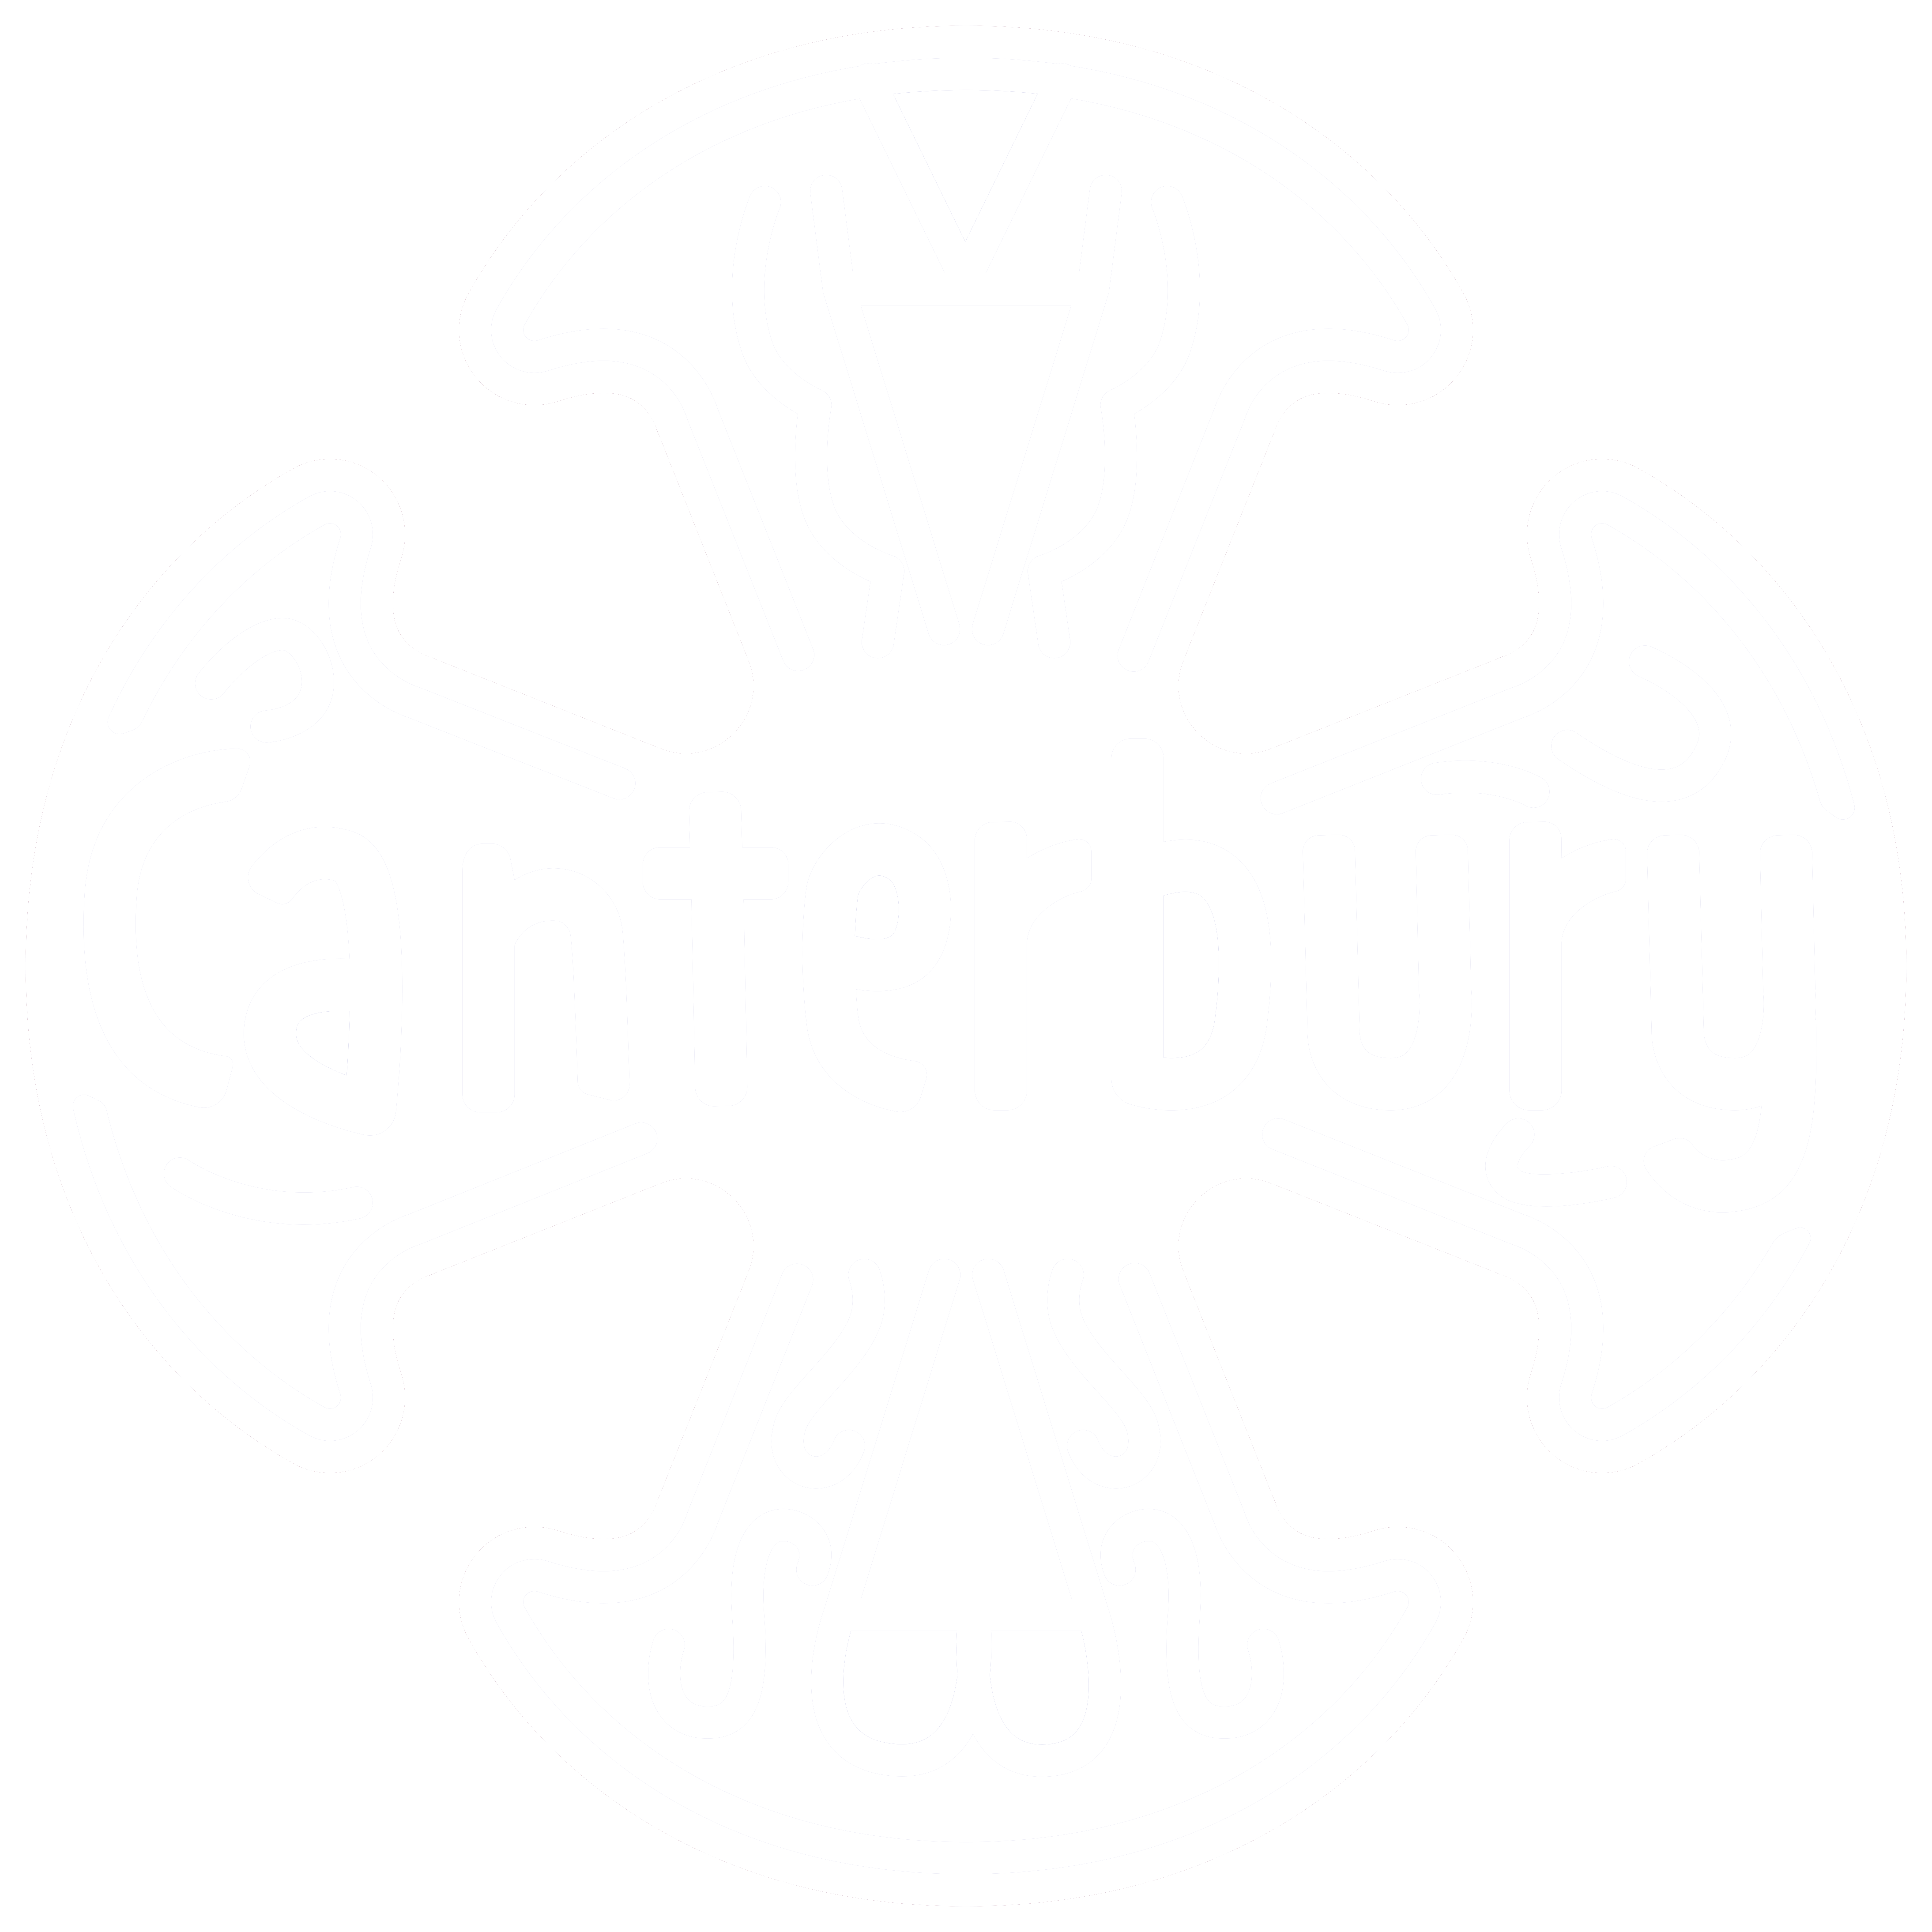 Canterbury Christian School